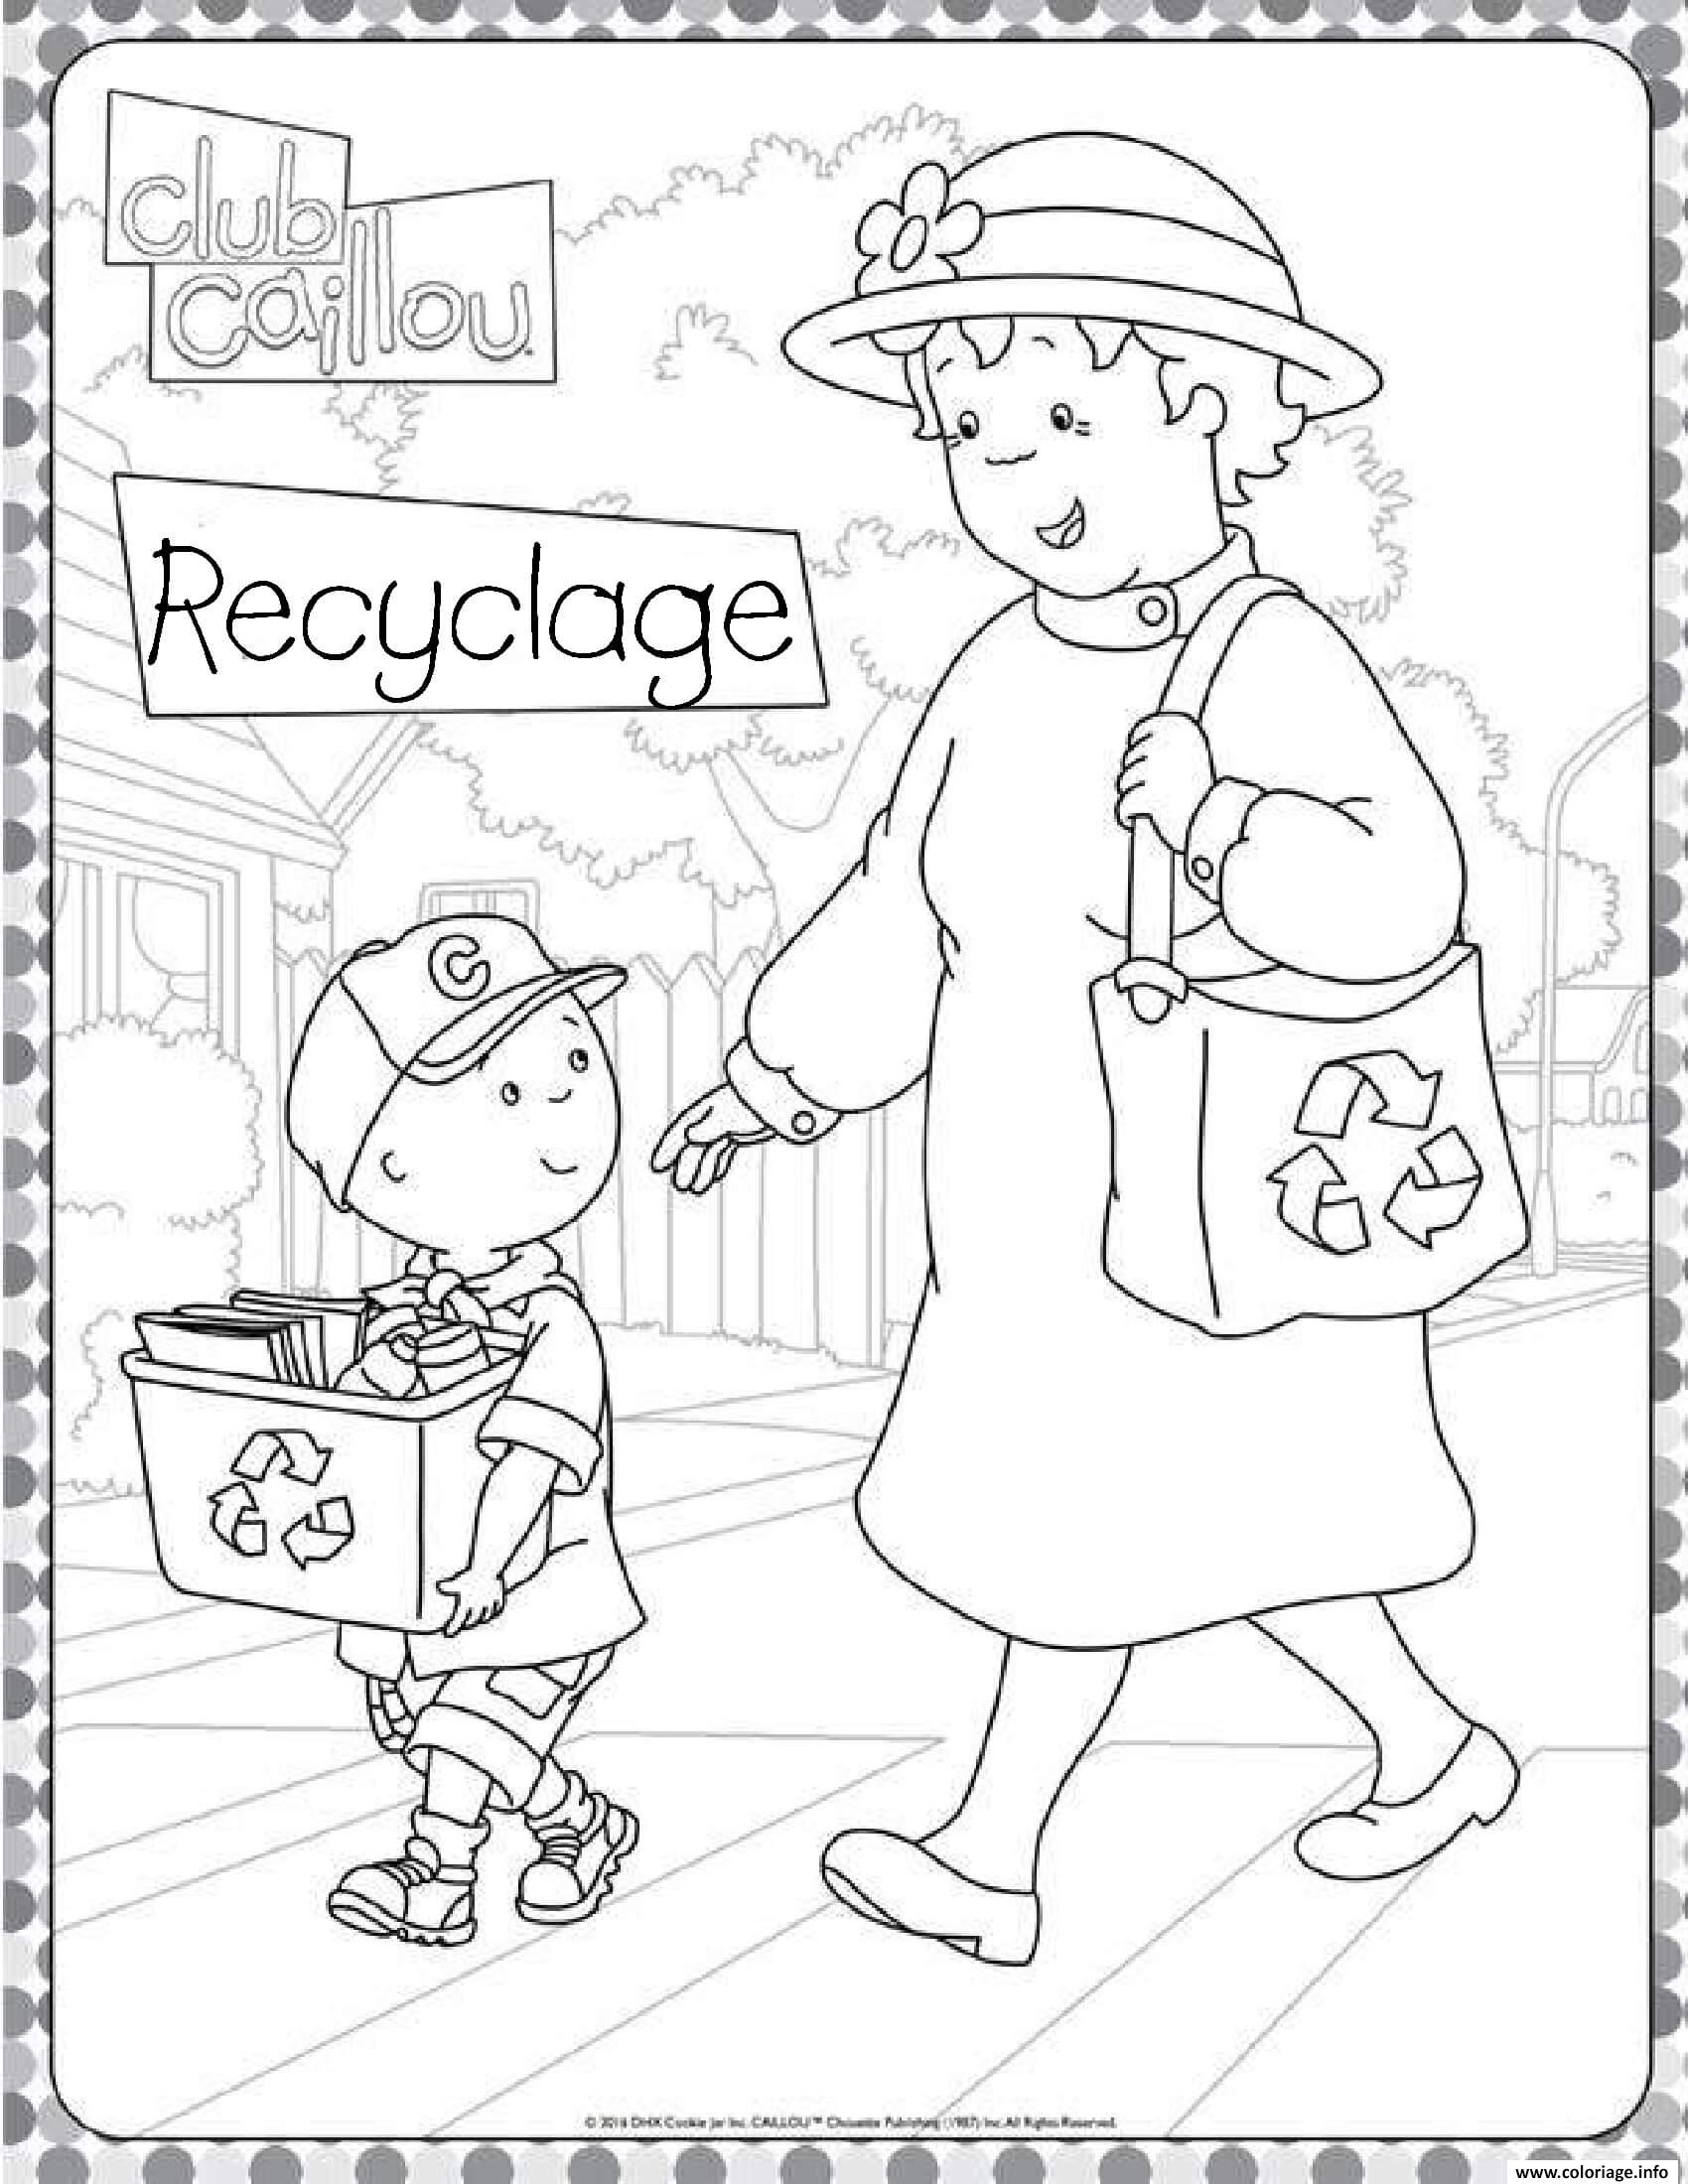 Dessin caillou aime recycler avec sa mamie Coloriage Gratuit à Imprimer